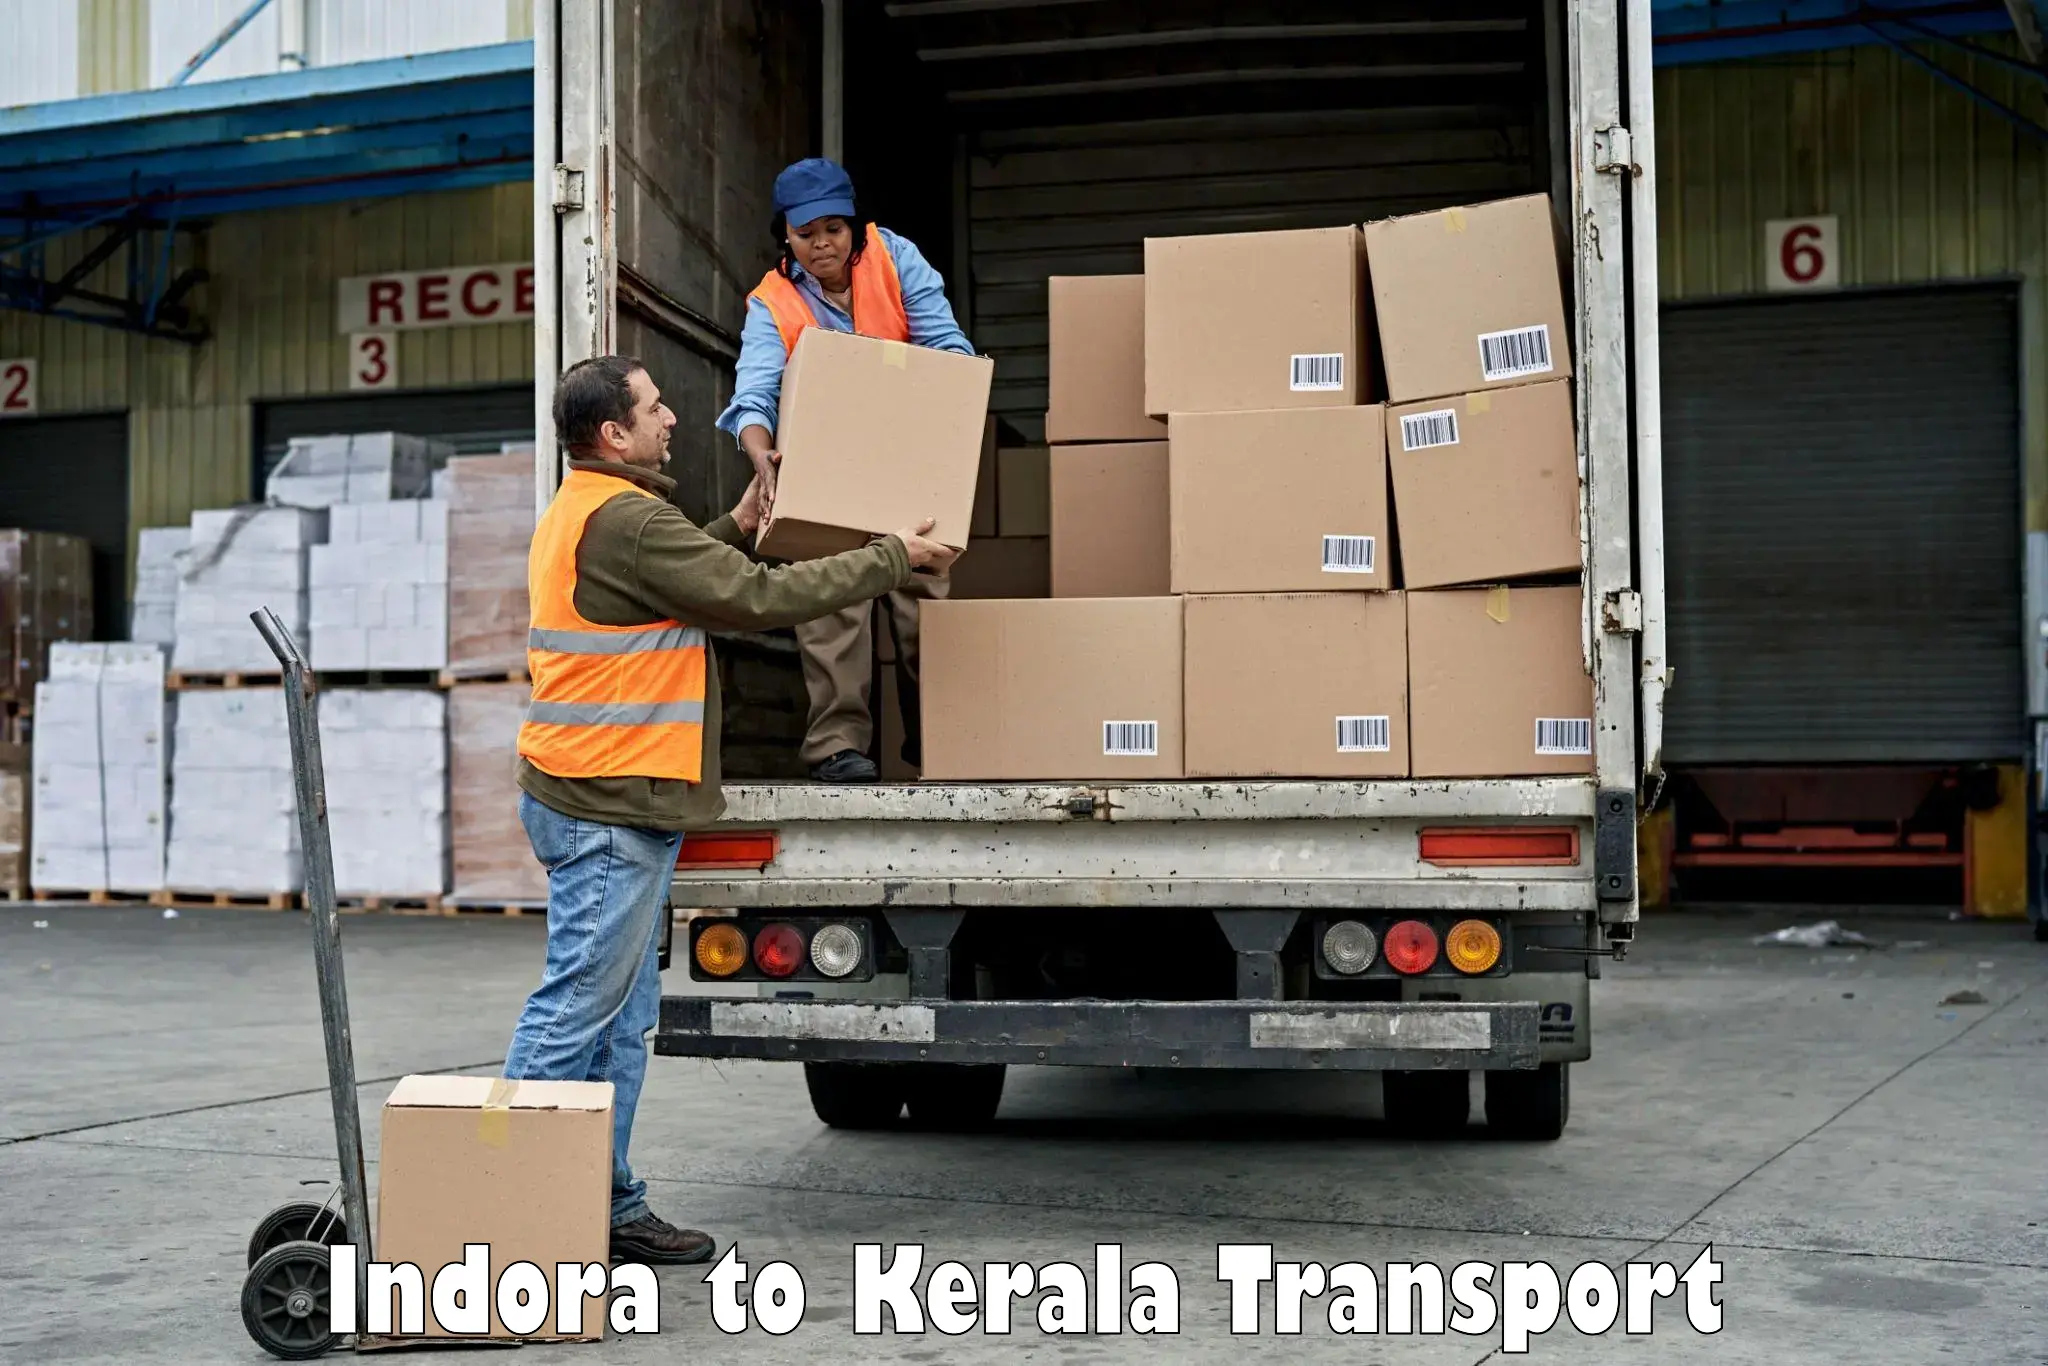 Container transport service in Indora to Kazhakkoottam